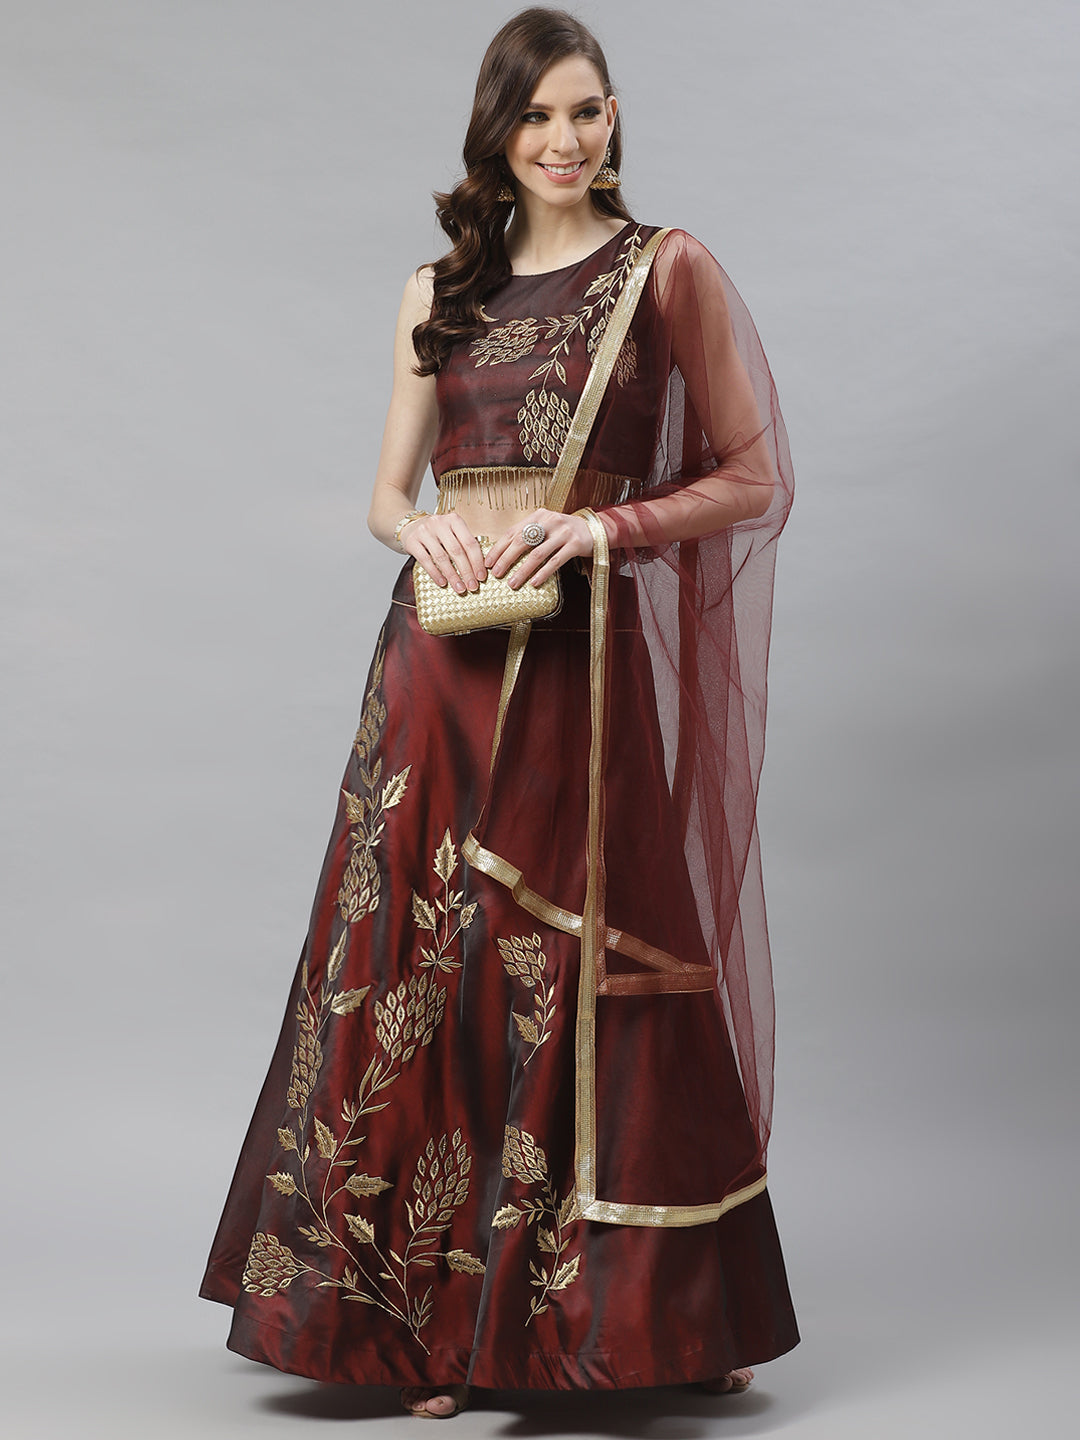 New Arrival Bollywood Style Lahenga Choli With Contrast Blouse,Embroidery  Work Lahenga Choli,W… | Indian outfits lehenga, Party wear lehenga,  Designer lehenga choli